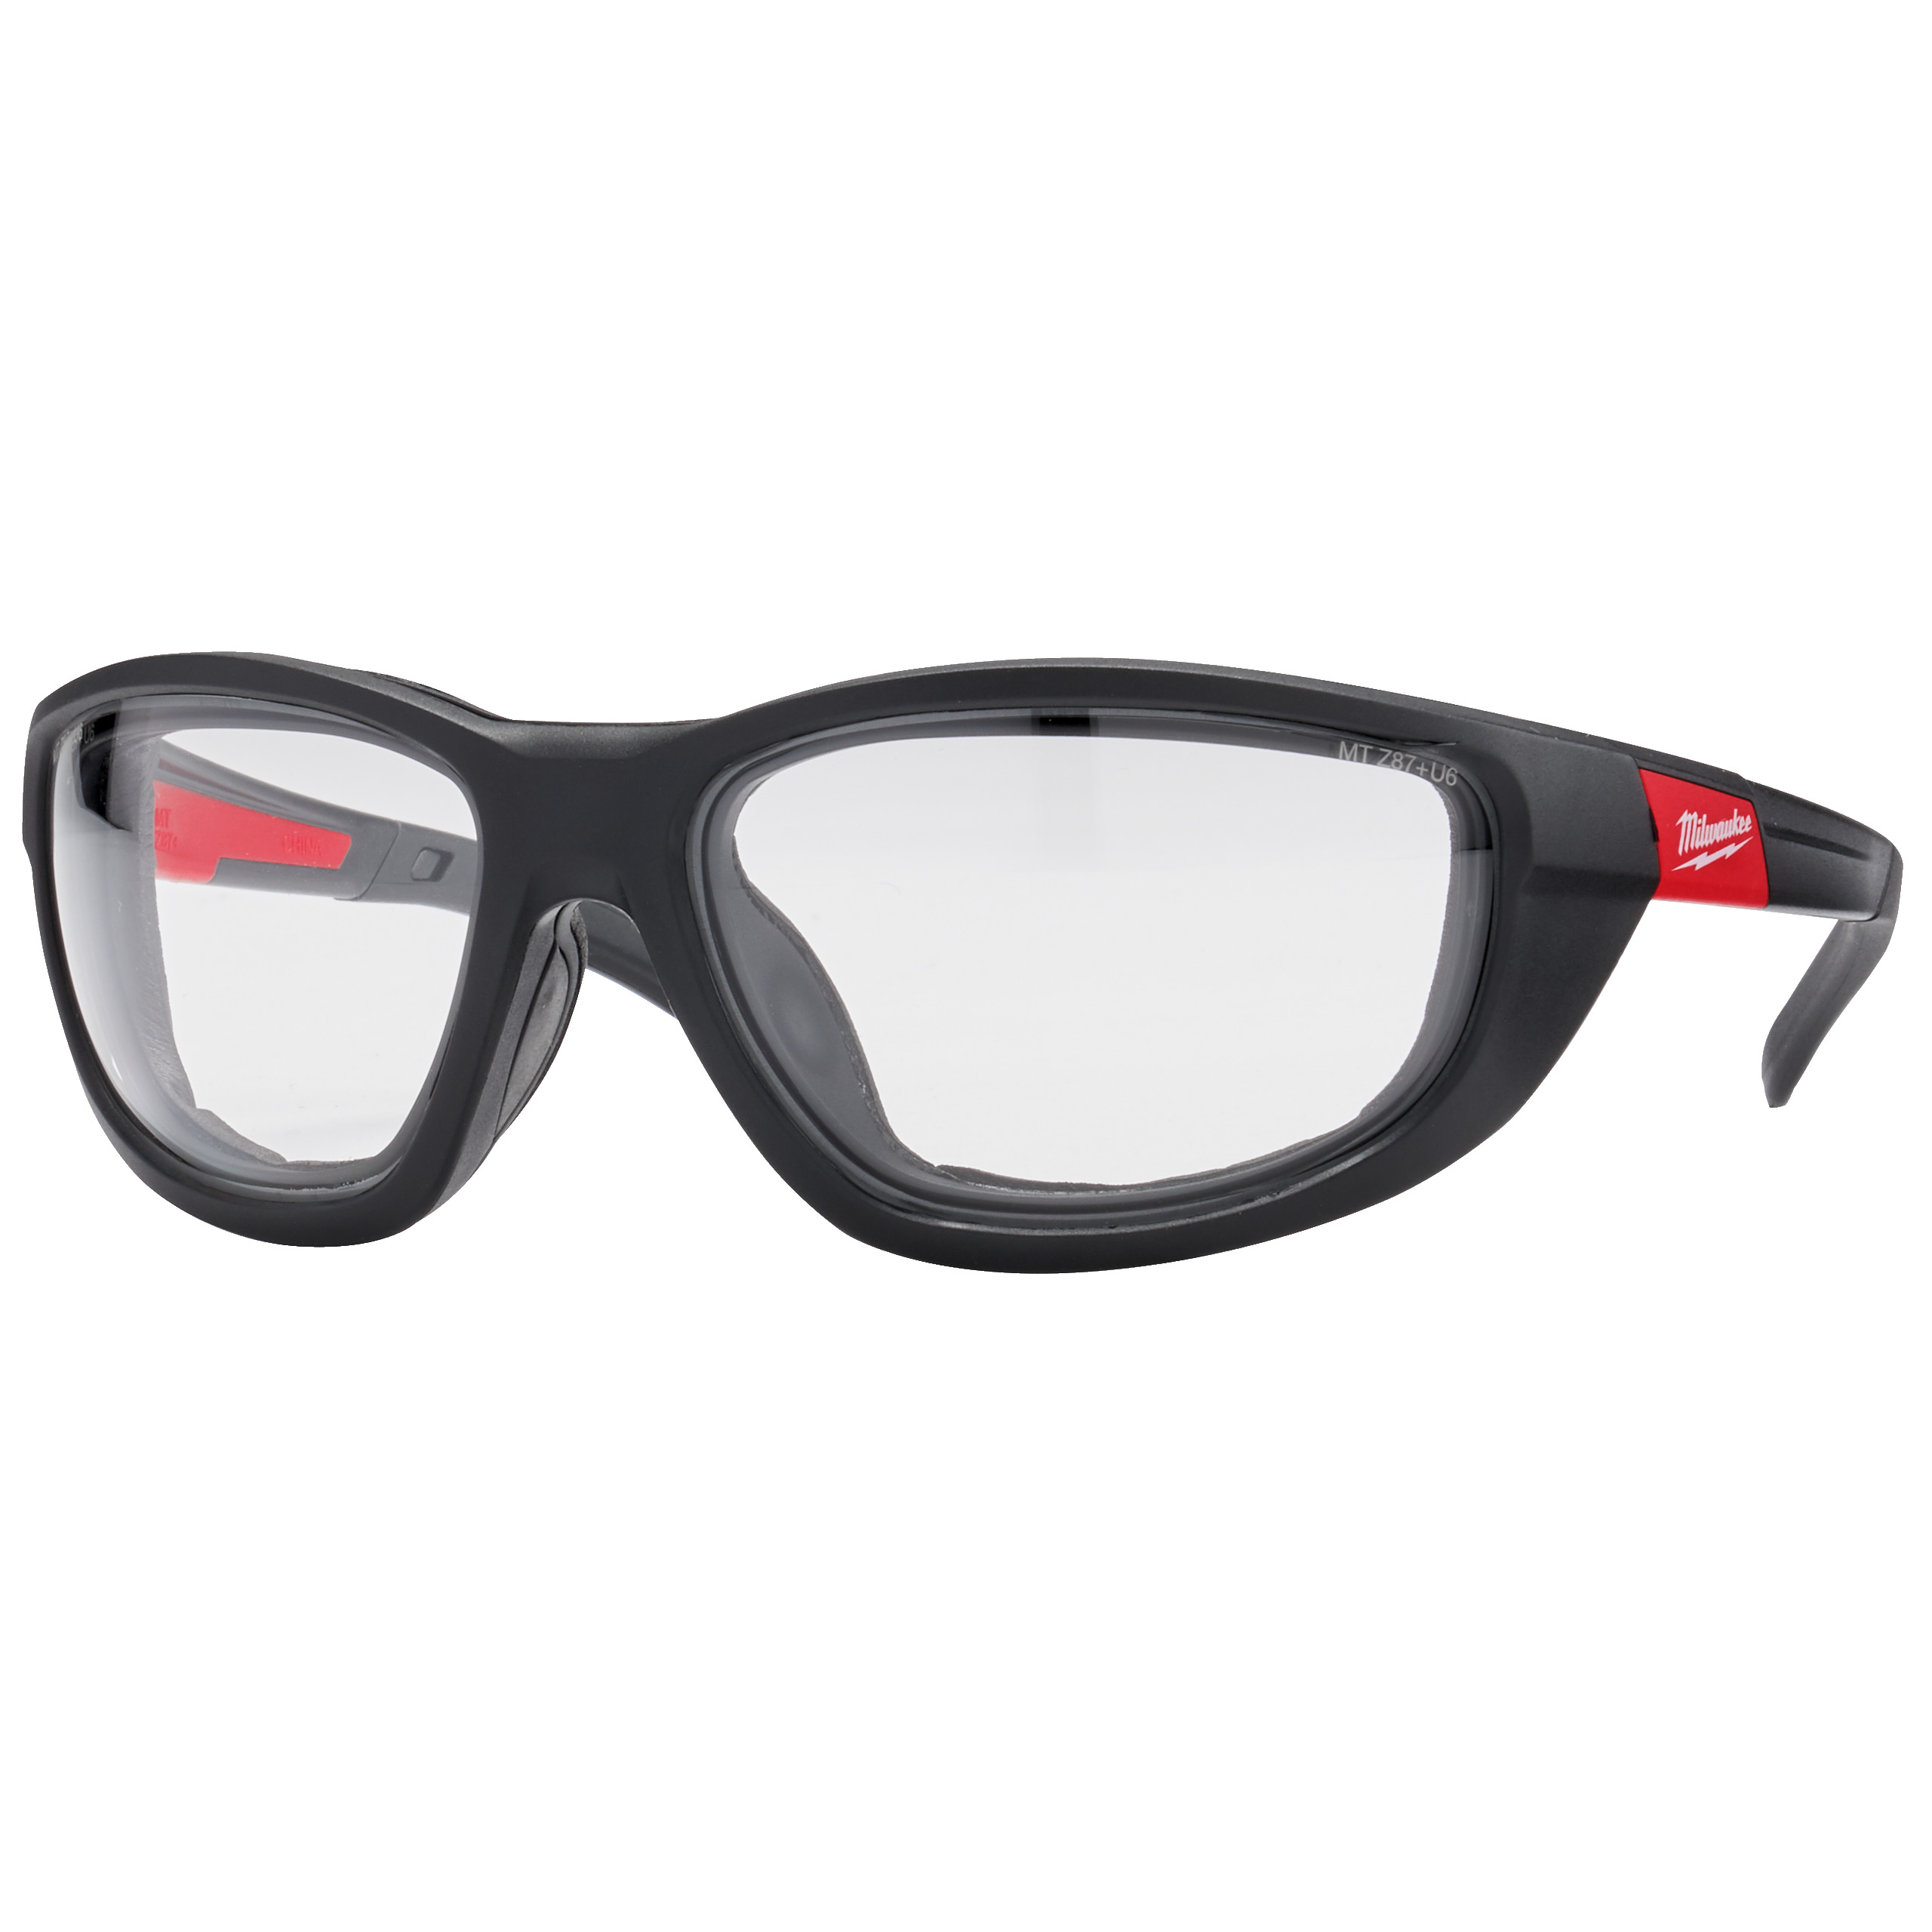 Vysoko výkonnostní ochranné brýle čiré s těsnící vložkou- 1ks